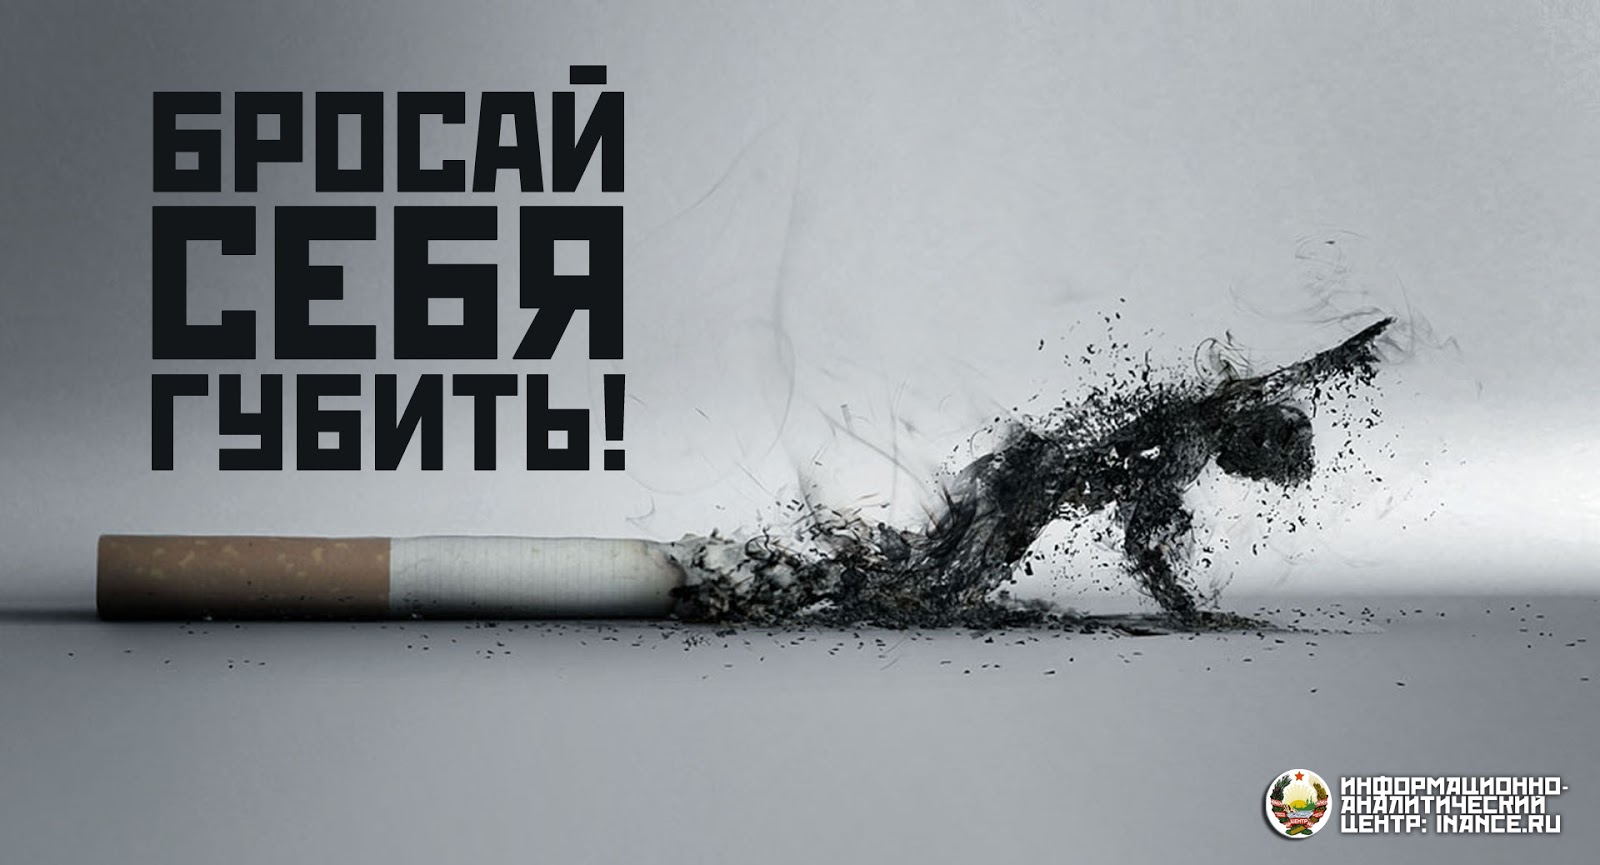 Я готов полюбить тебя если бросить курить. Против курения. Плакат против курения. Против сигарет. Баннер против курения.